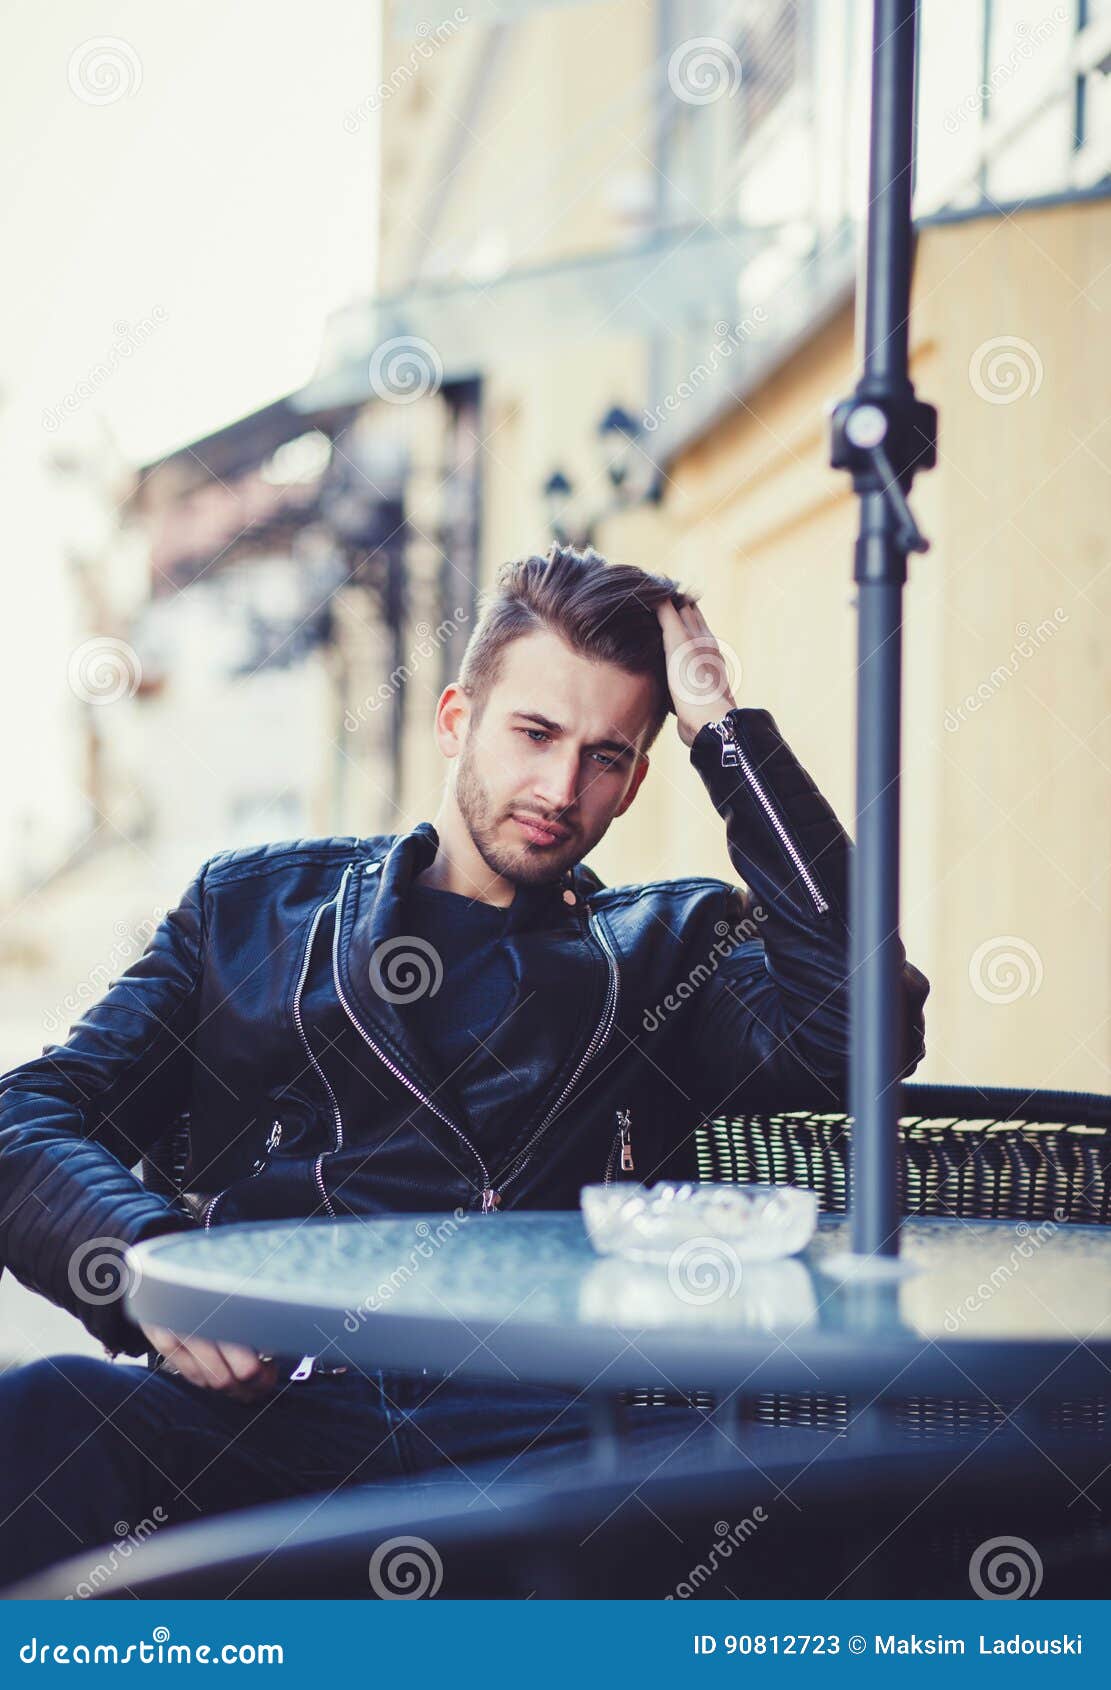 Stylish Man Wearing Black Leather Jacket Stock Image - Image of ...